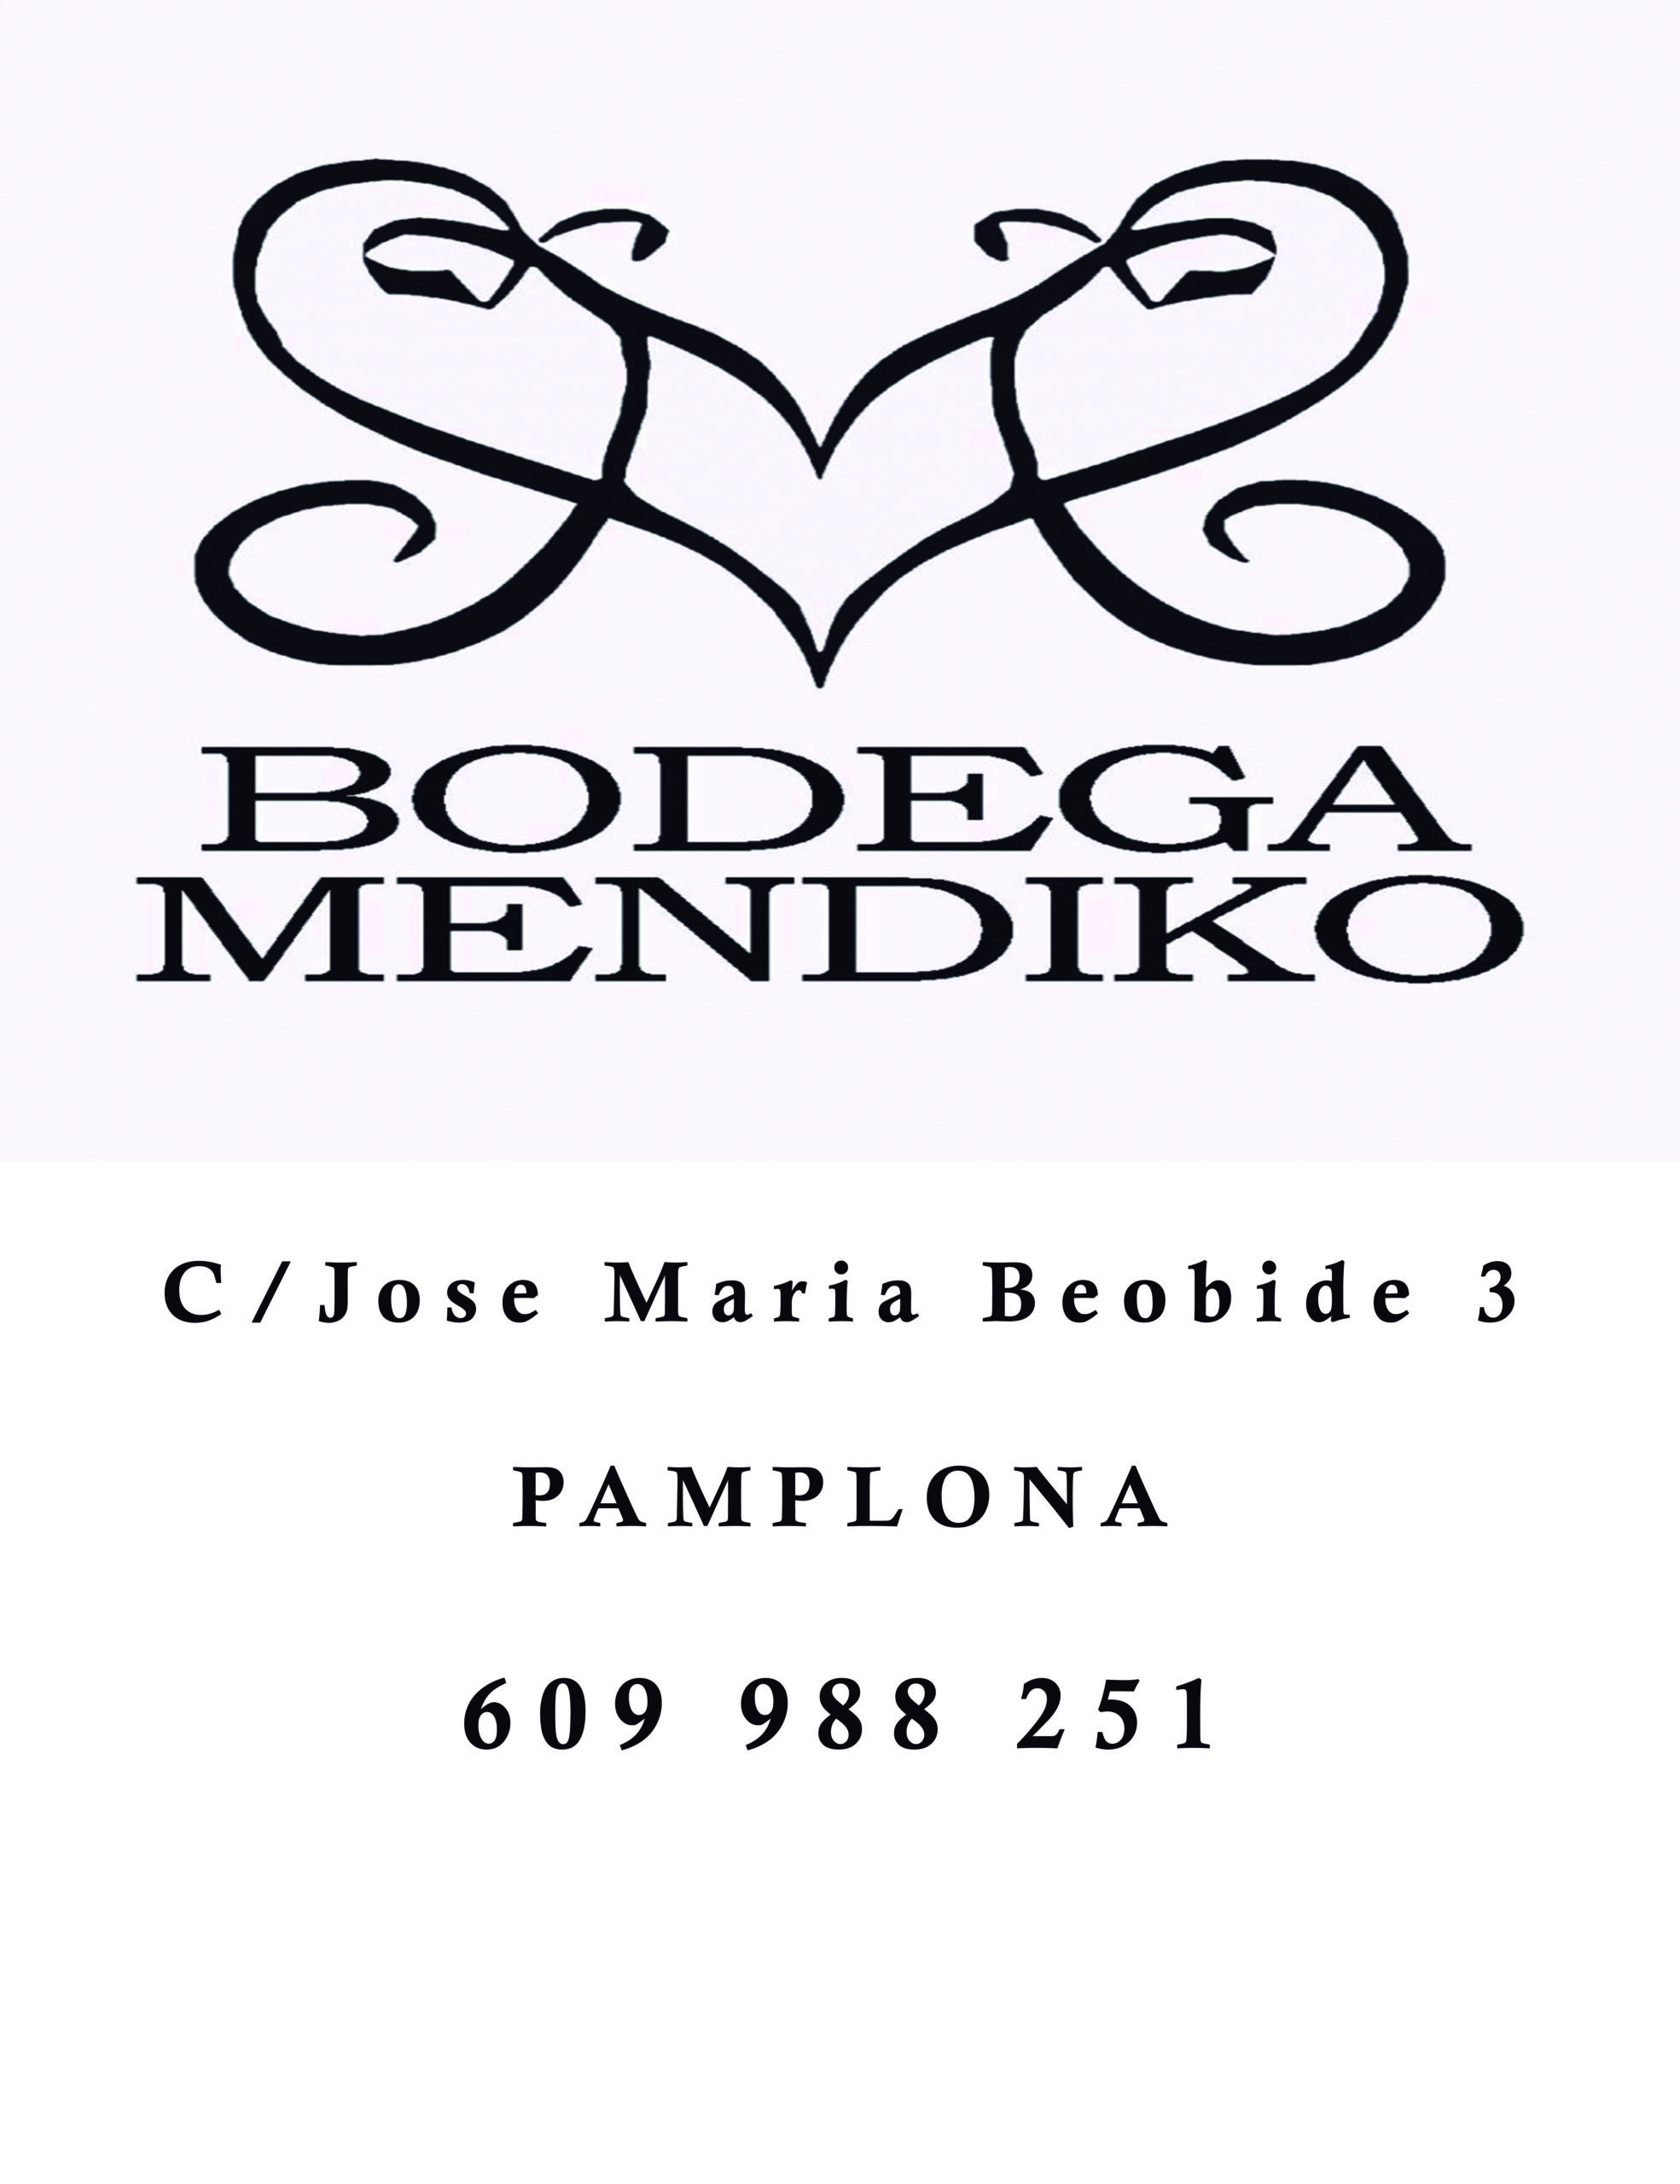 Bodega Mendiko